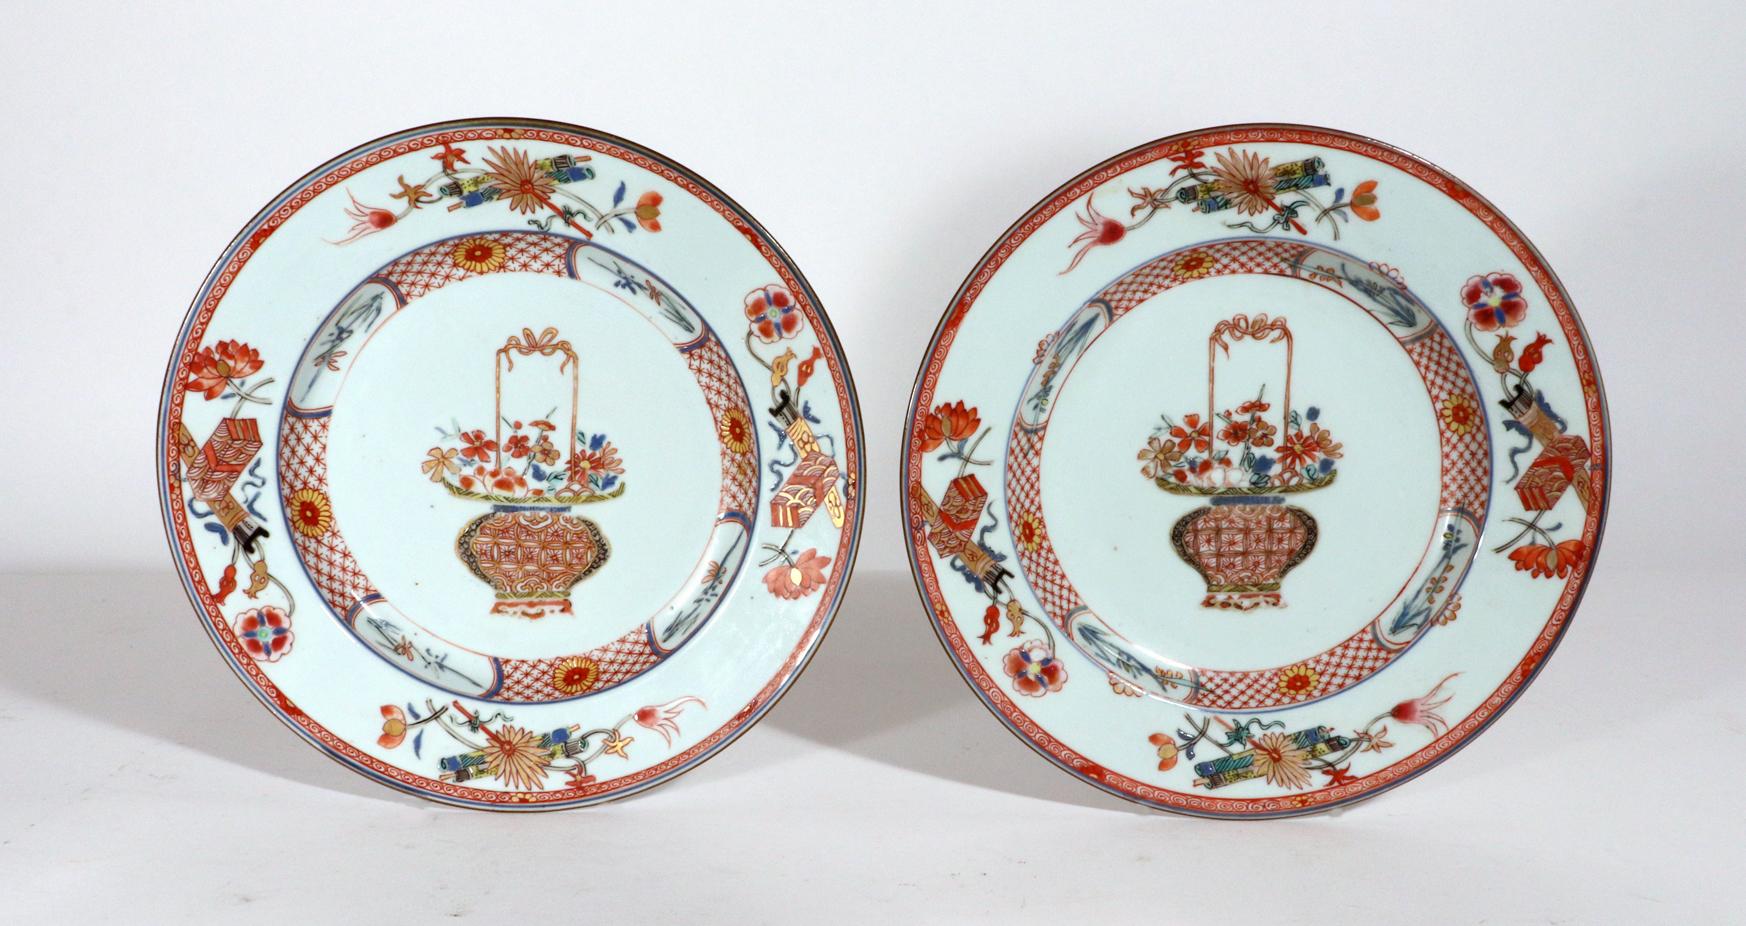 Assiettes en porcelaine d'exportation chinoise de la famille rose peintes avec des paniers de fleurs,
Yongzheng (1723-1735)

La paire d'assiettes en porcelaine d'exportation chinoise de la période Yongzheng 